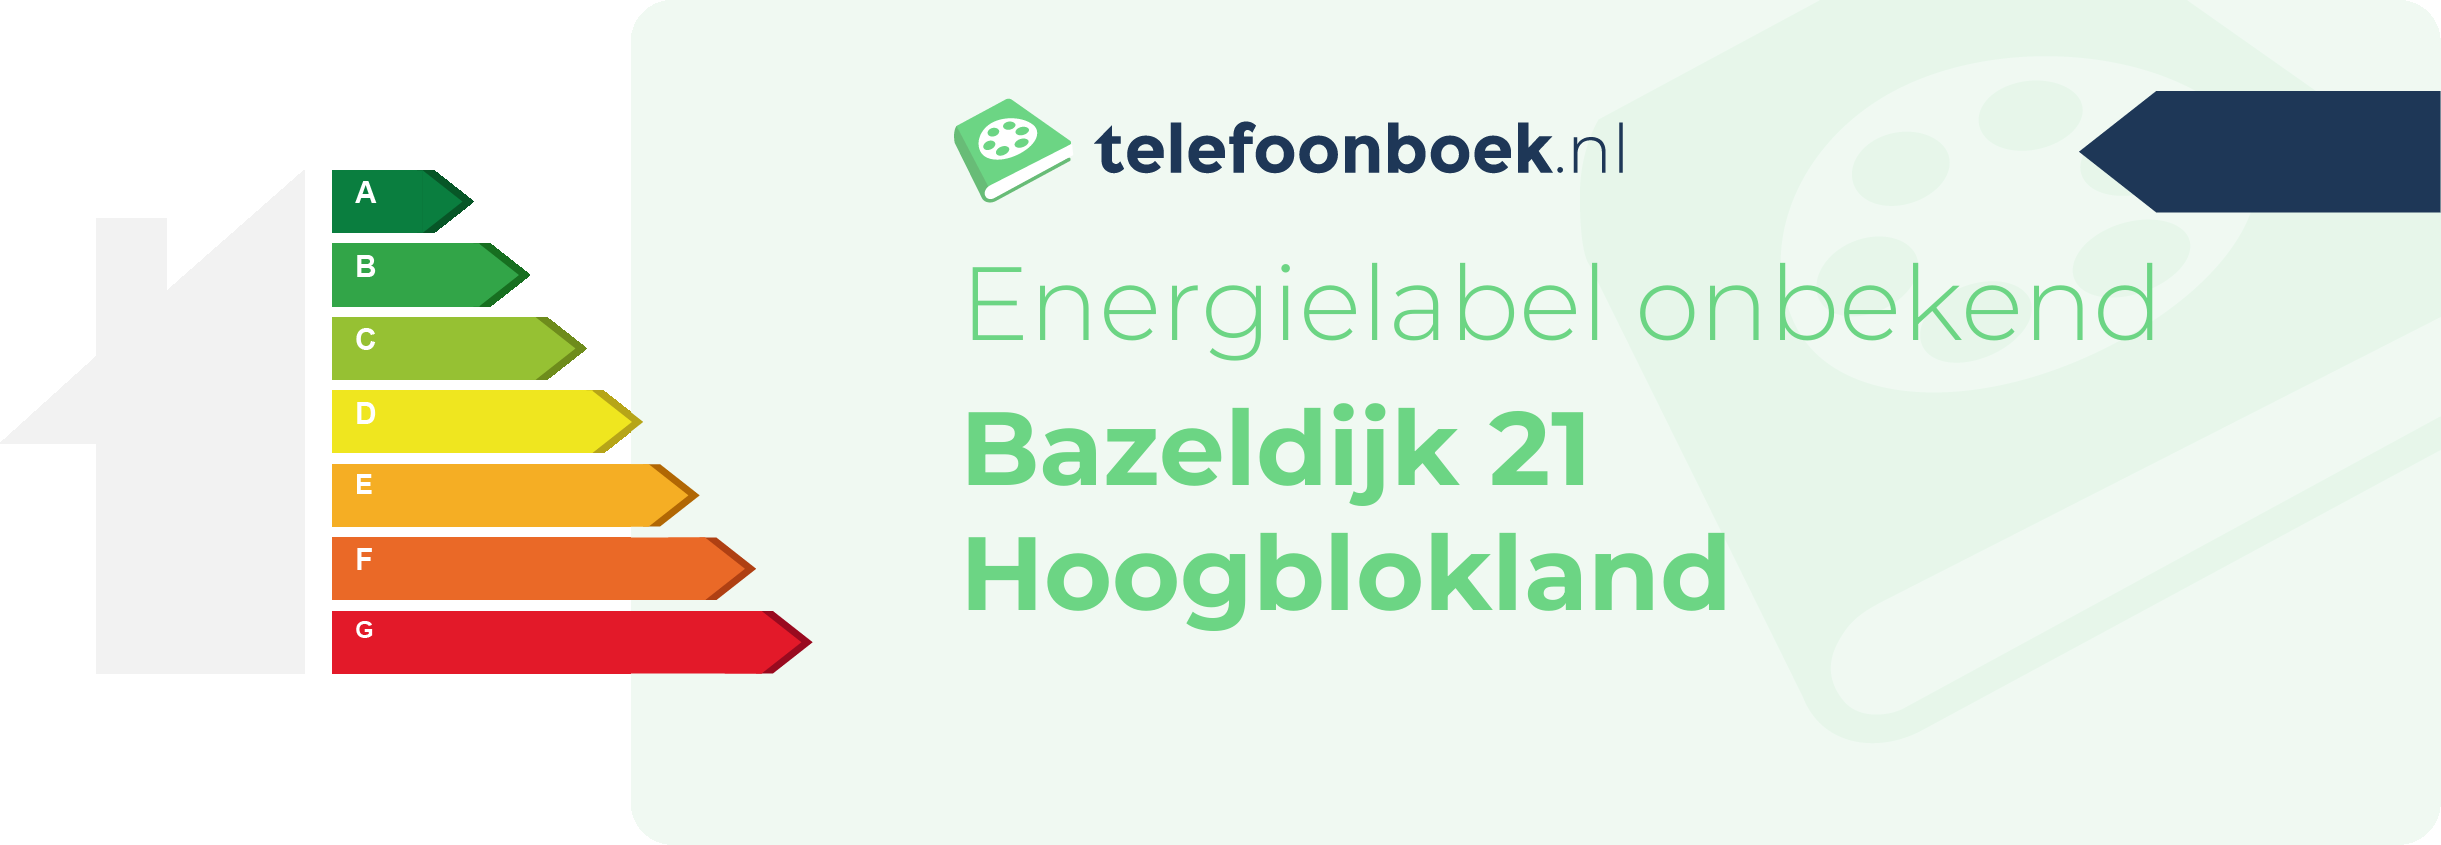 Energielabel Bazeldijk 21 Hoogblokland